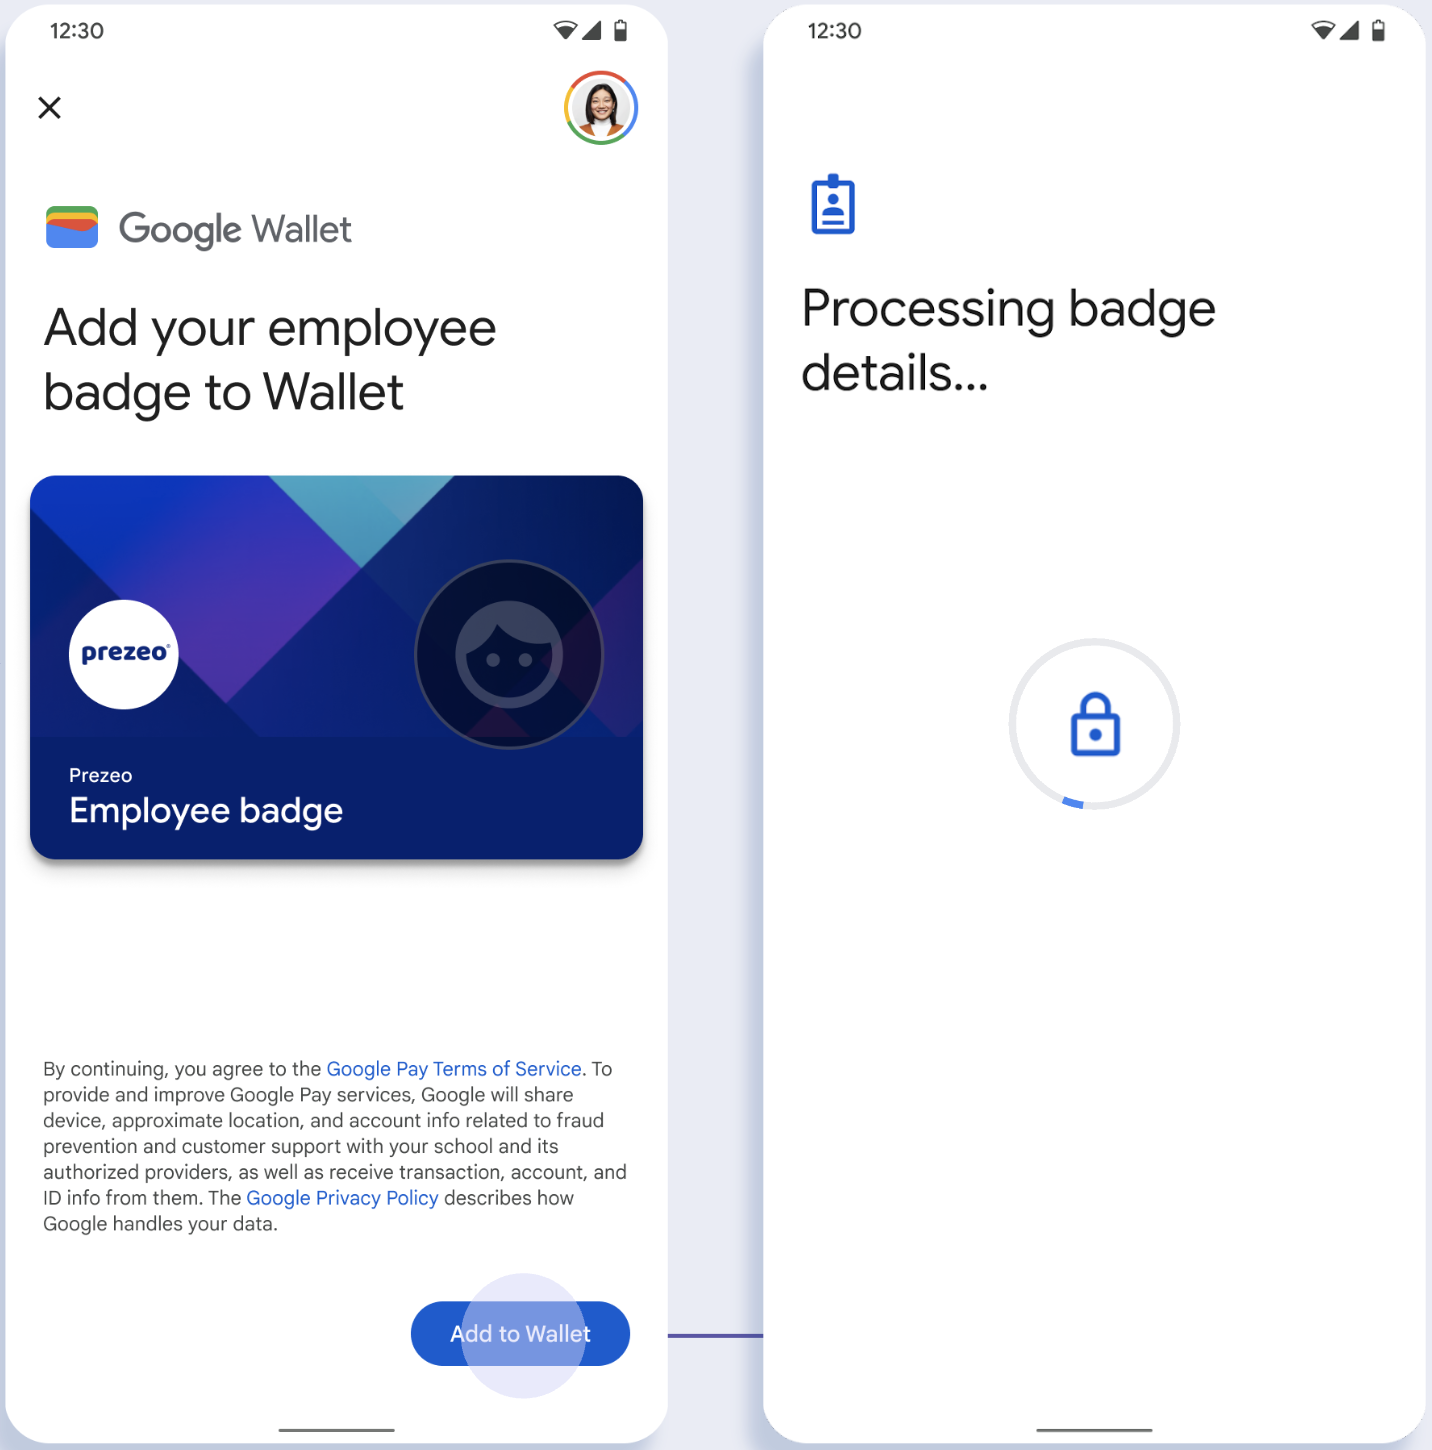 Trong màn hình đầu tiên, ứng dụng kết nối với Google Wallet. Trong màn hình thứ hai, người dùng chấp nhận Điều khoản dịch vụ và tiếp tục.